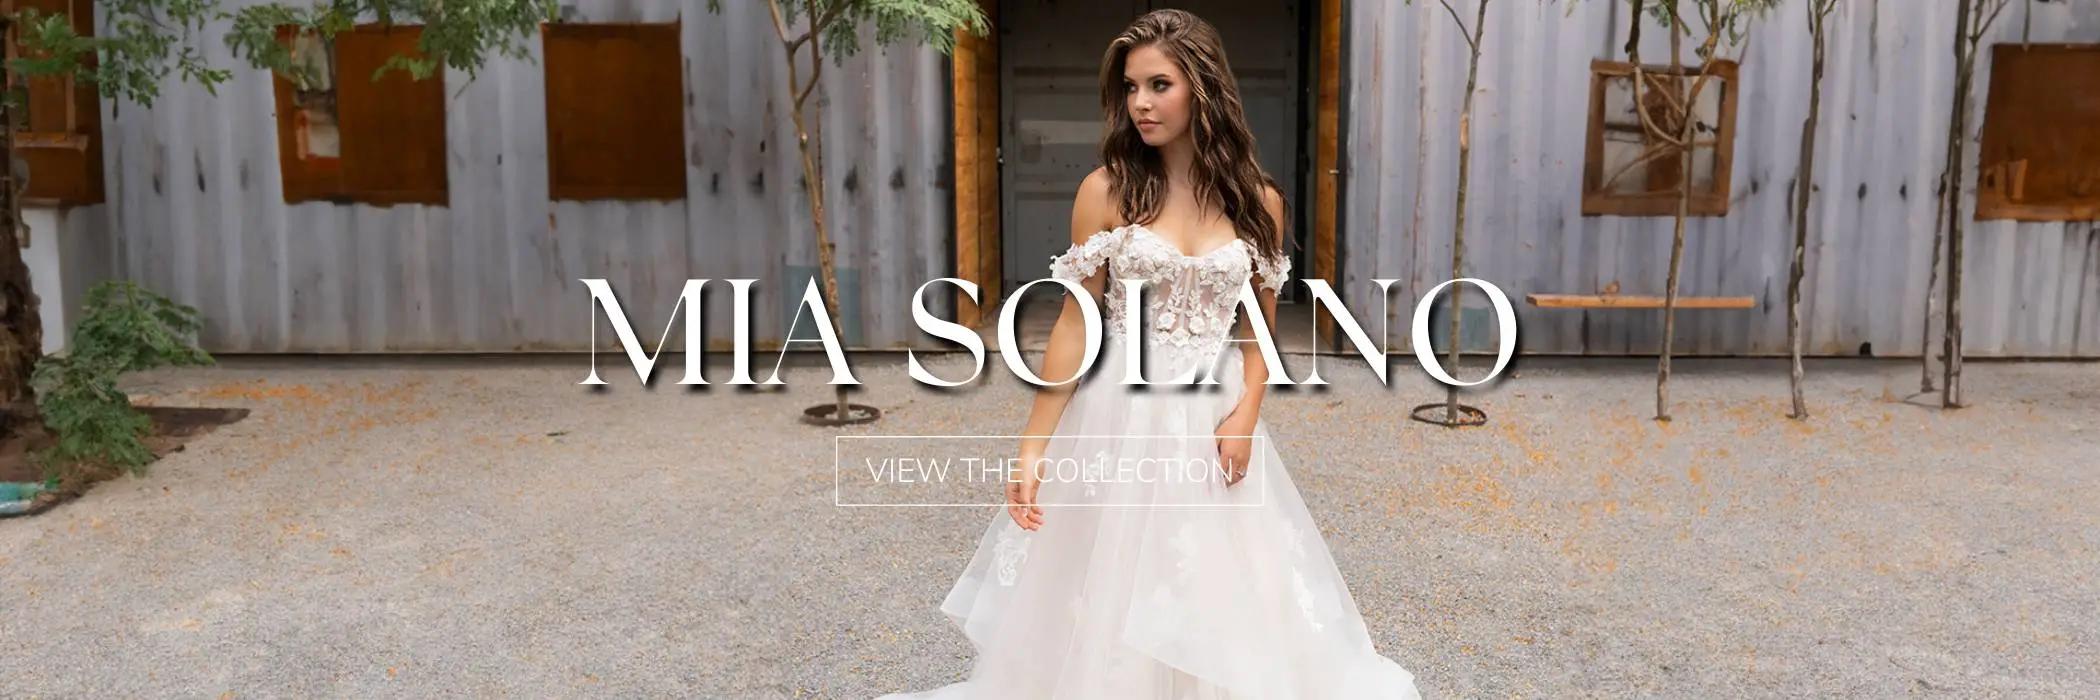 Mia Solano bridal gown